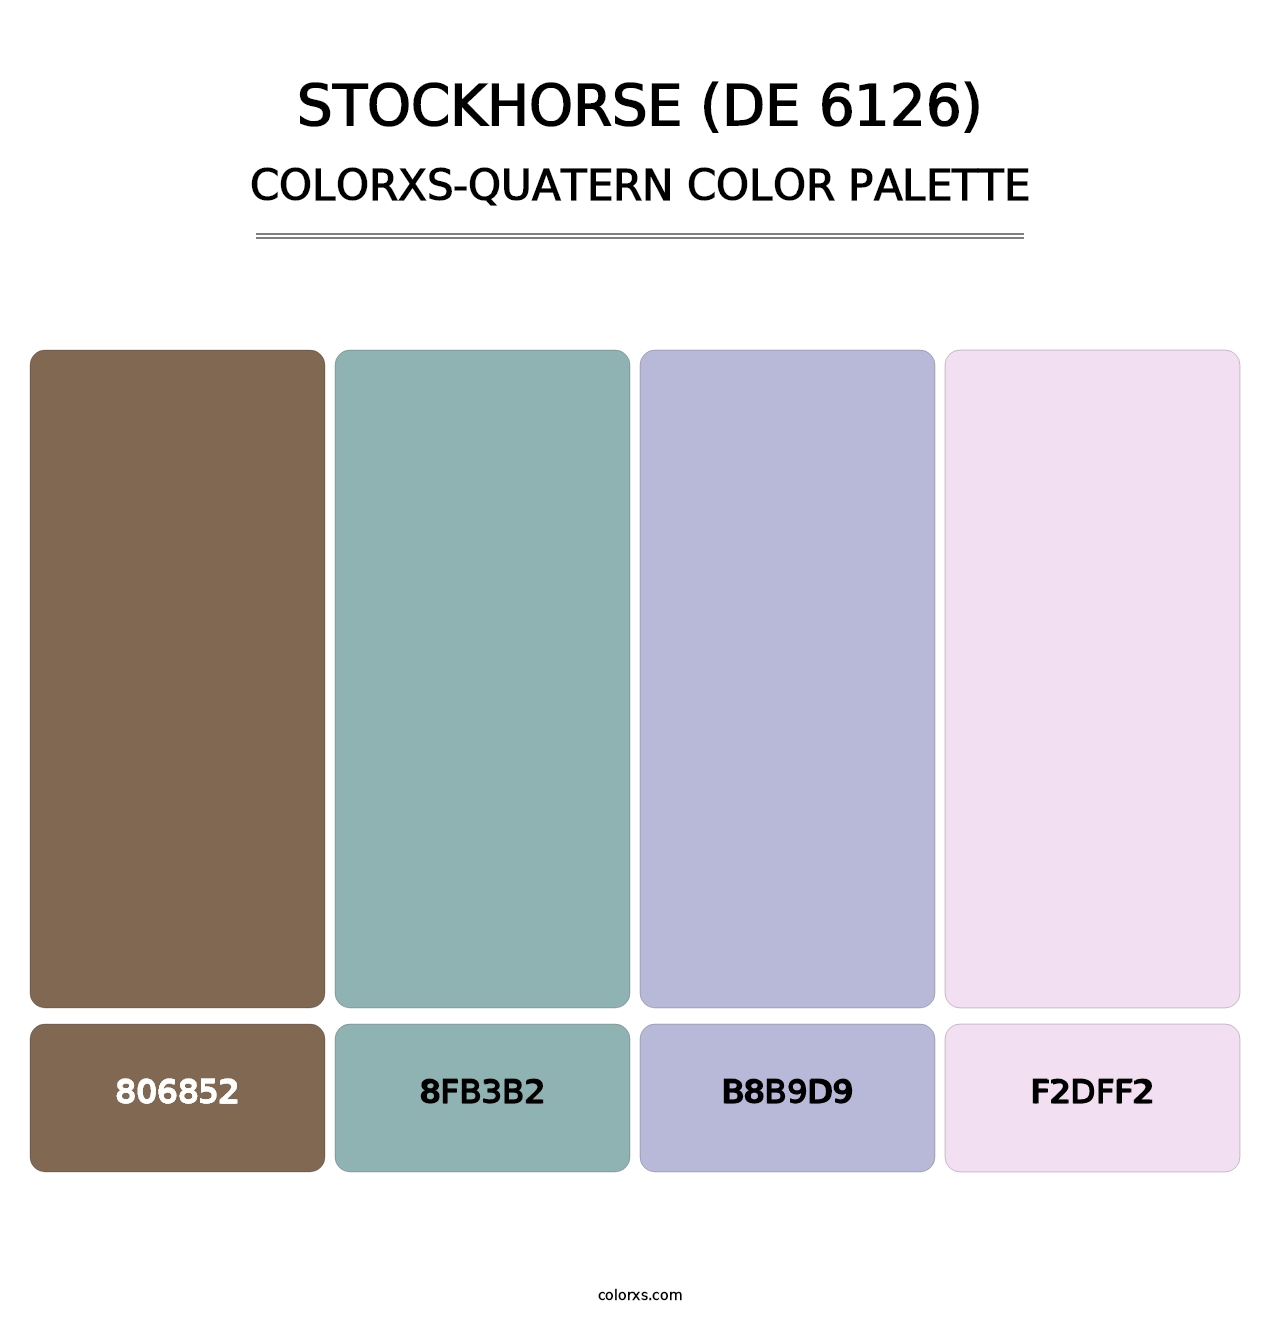 Stockhorse (DE 6126) - Colorxs Quatern Palette